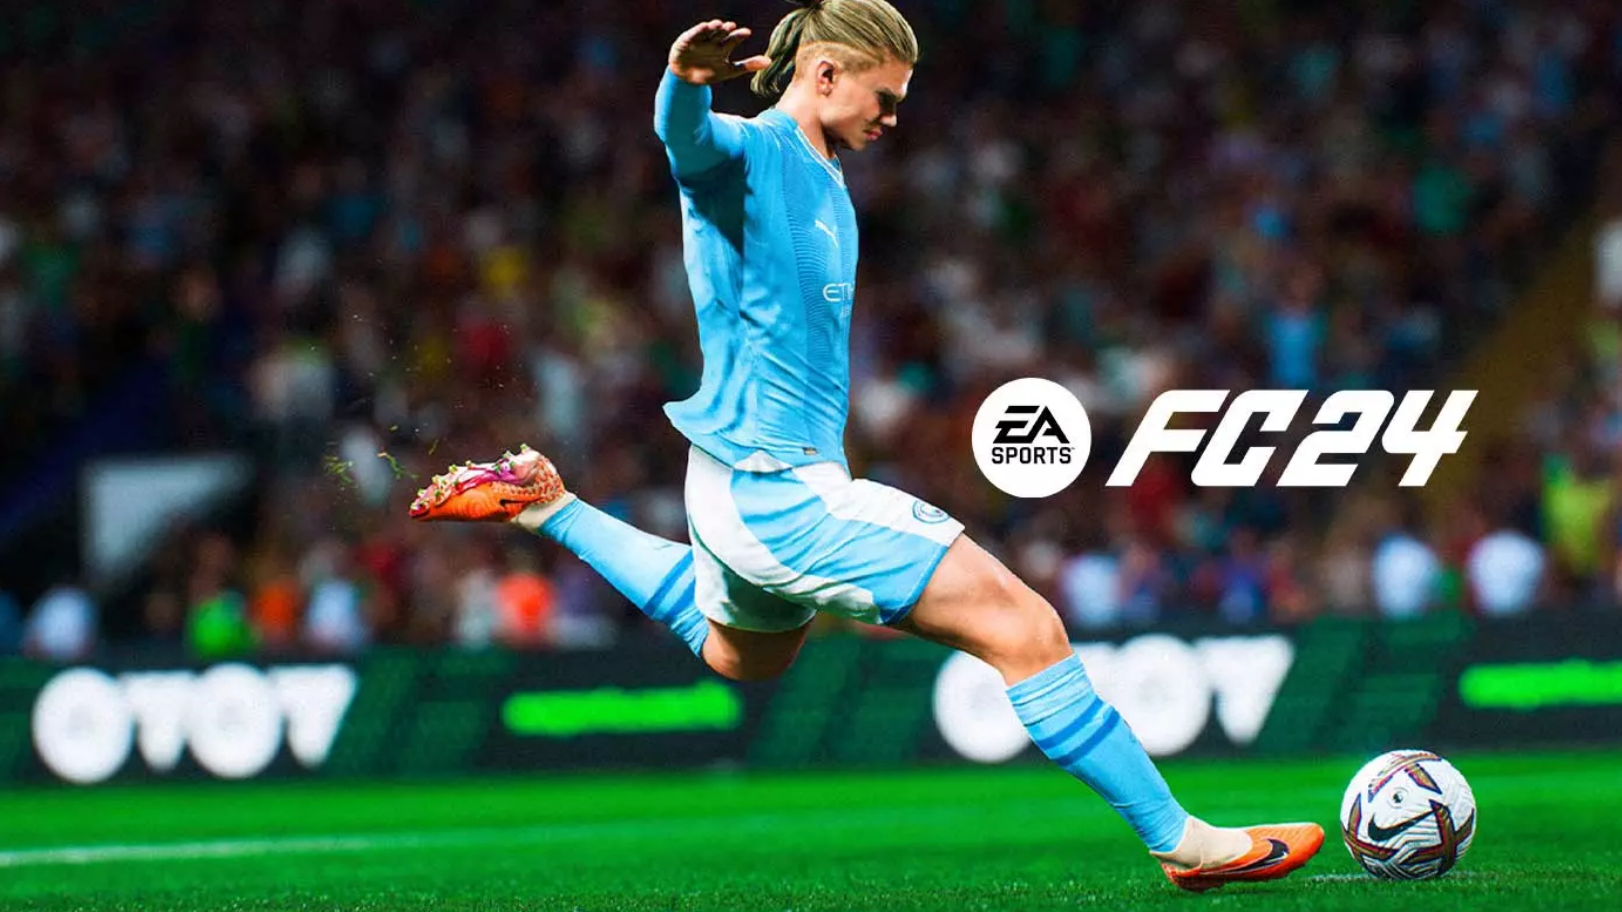 EA Sports FC 24 PS5 vs Xbox Series vs PC Comparison